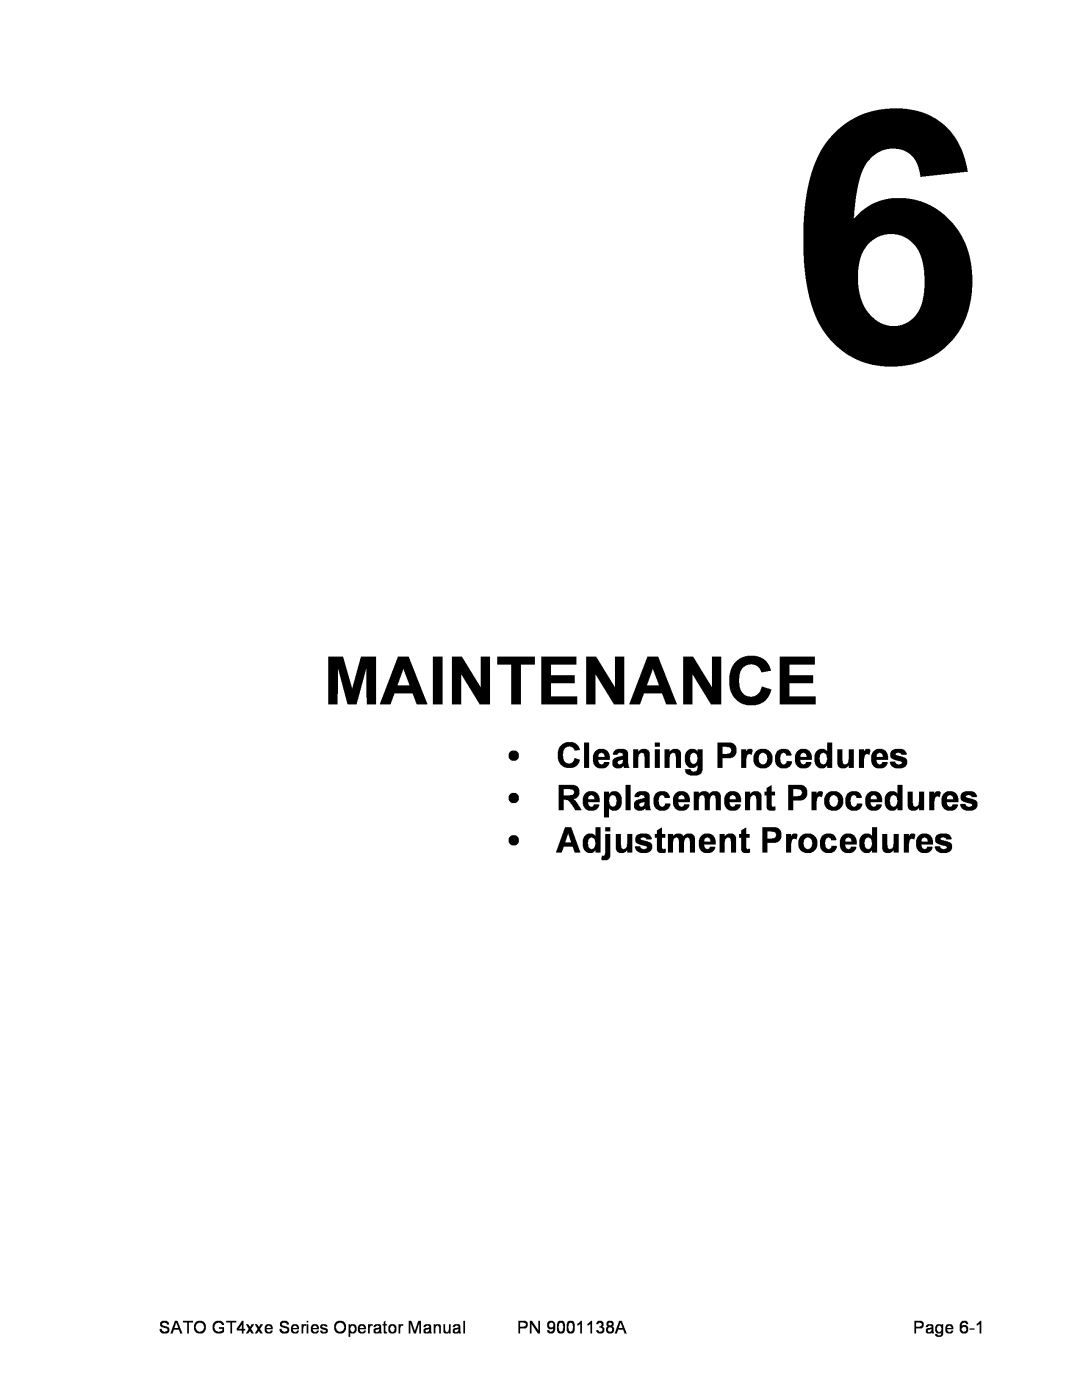 SATO GT 410, GT 424e, GT408 manual Maintenance, Cleaning Procedures Replacement Procedures Adjustment Procedures 